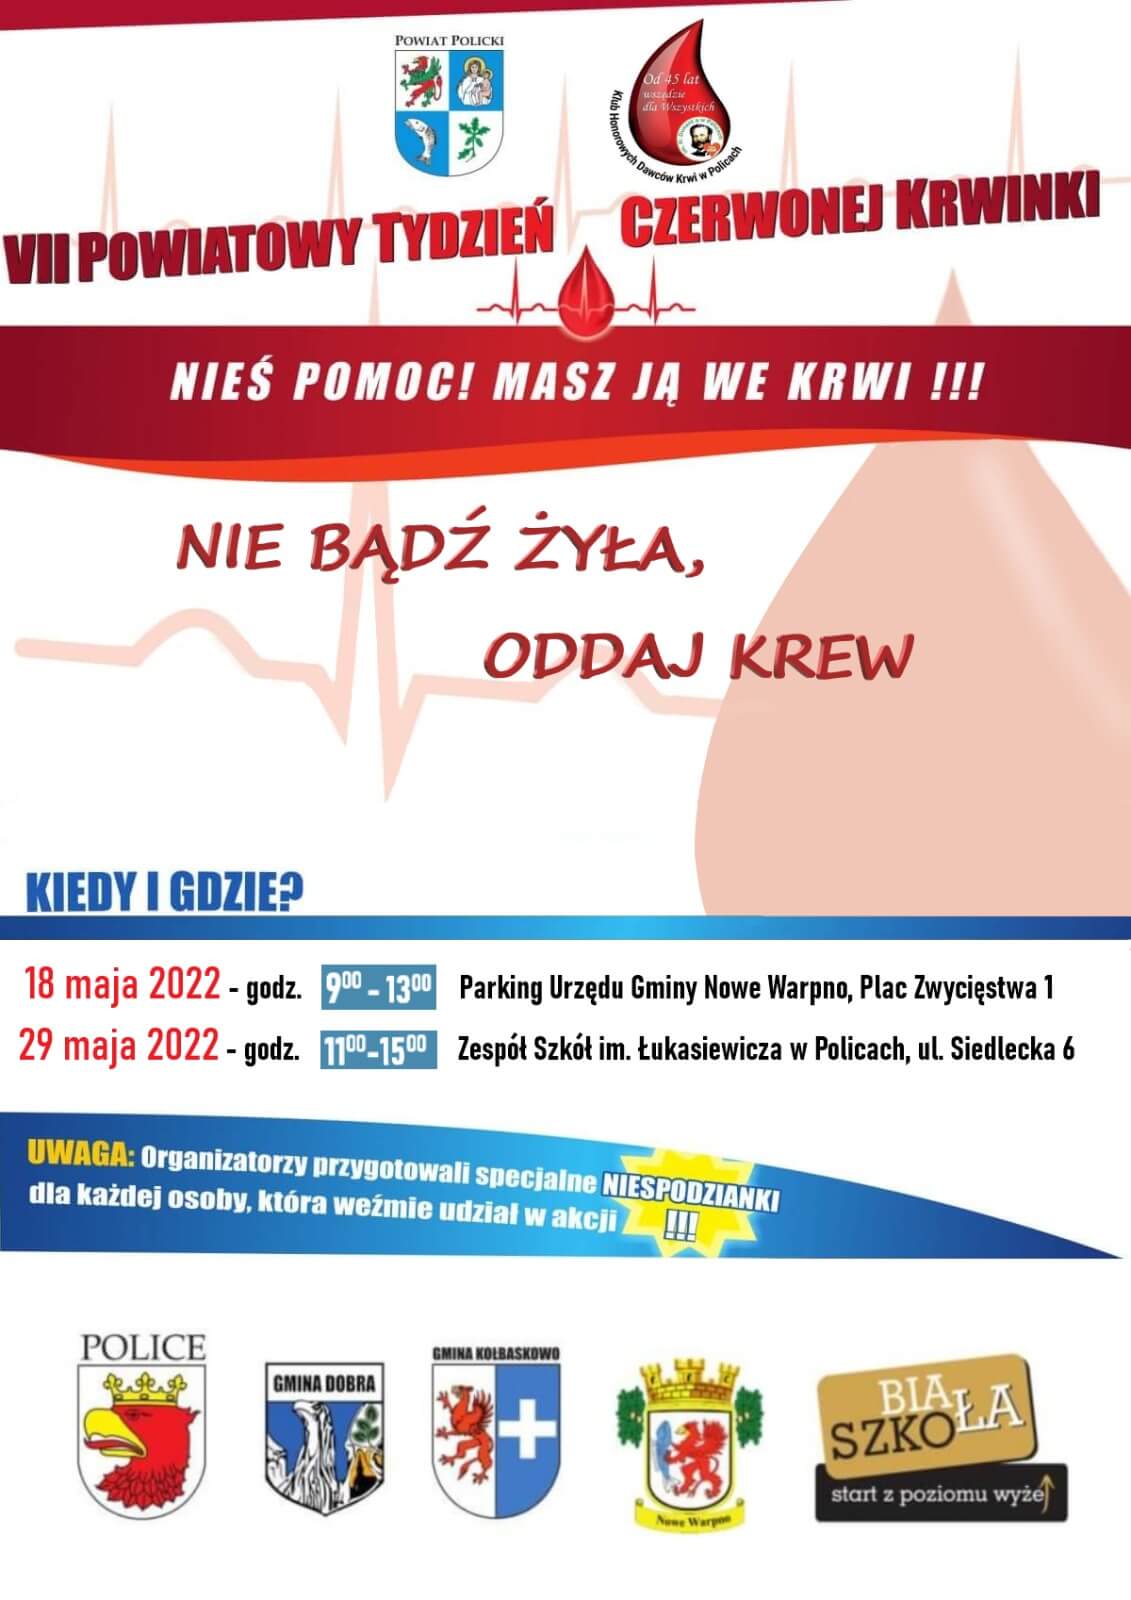 Plakat promujący akcję "Powiatowy Tydzień Czerwonej Krwinki"